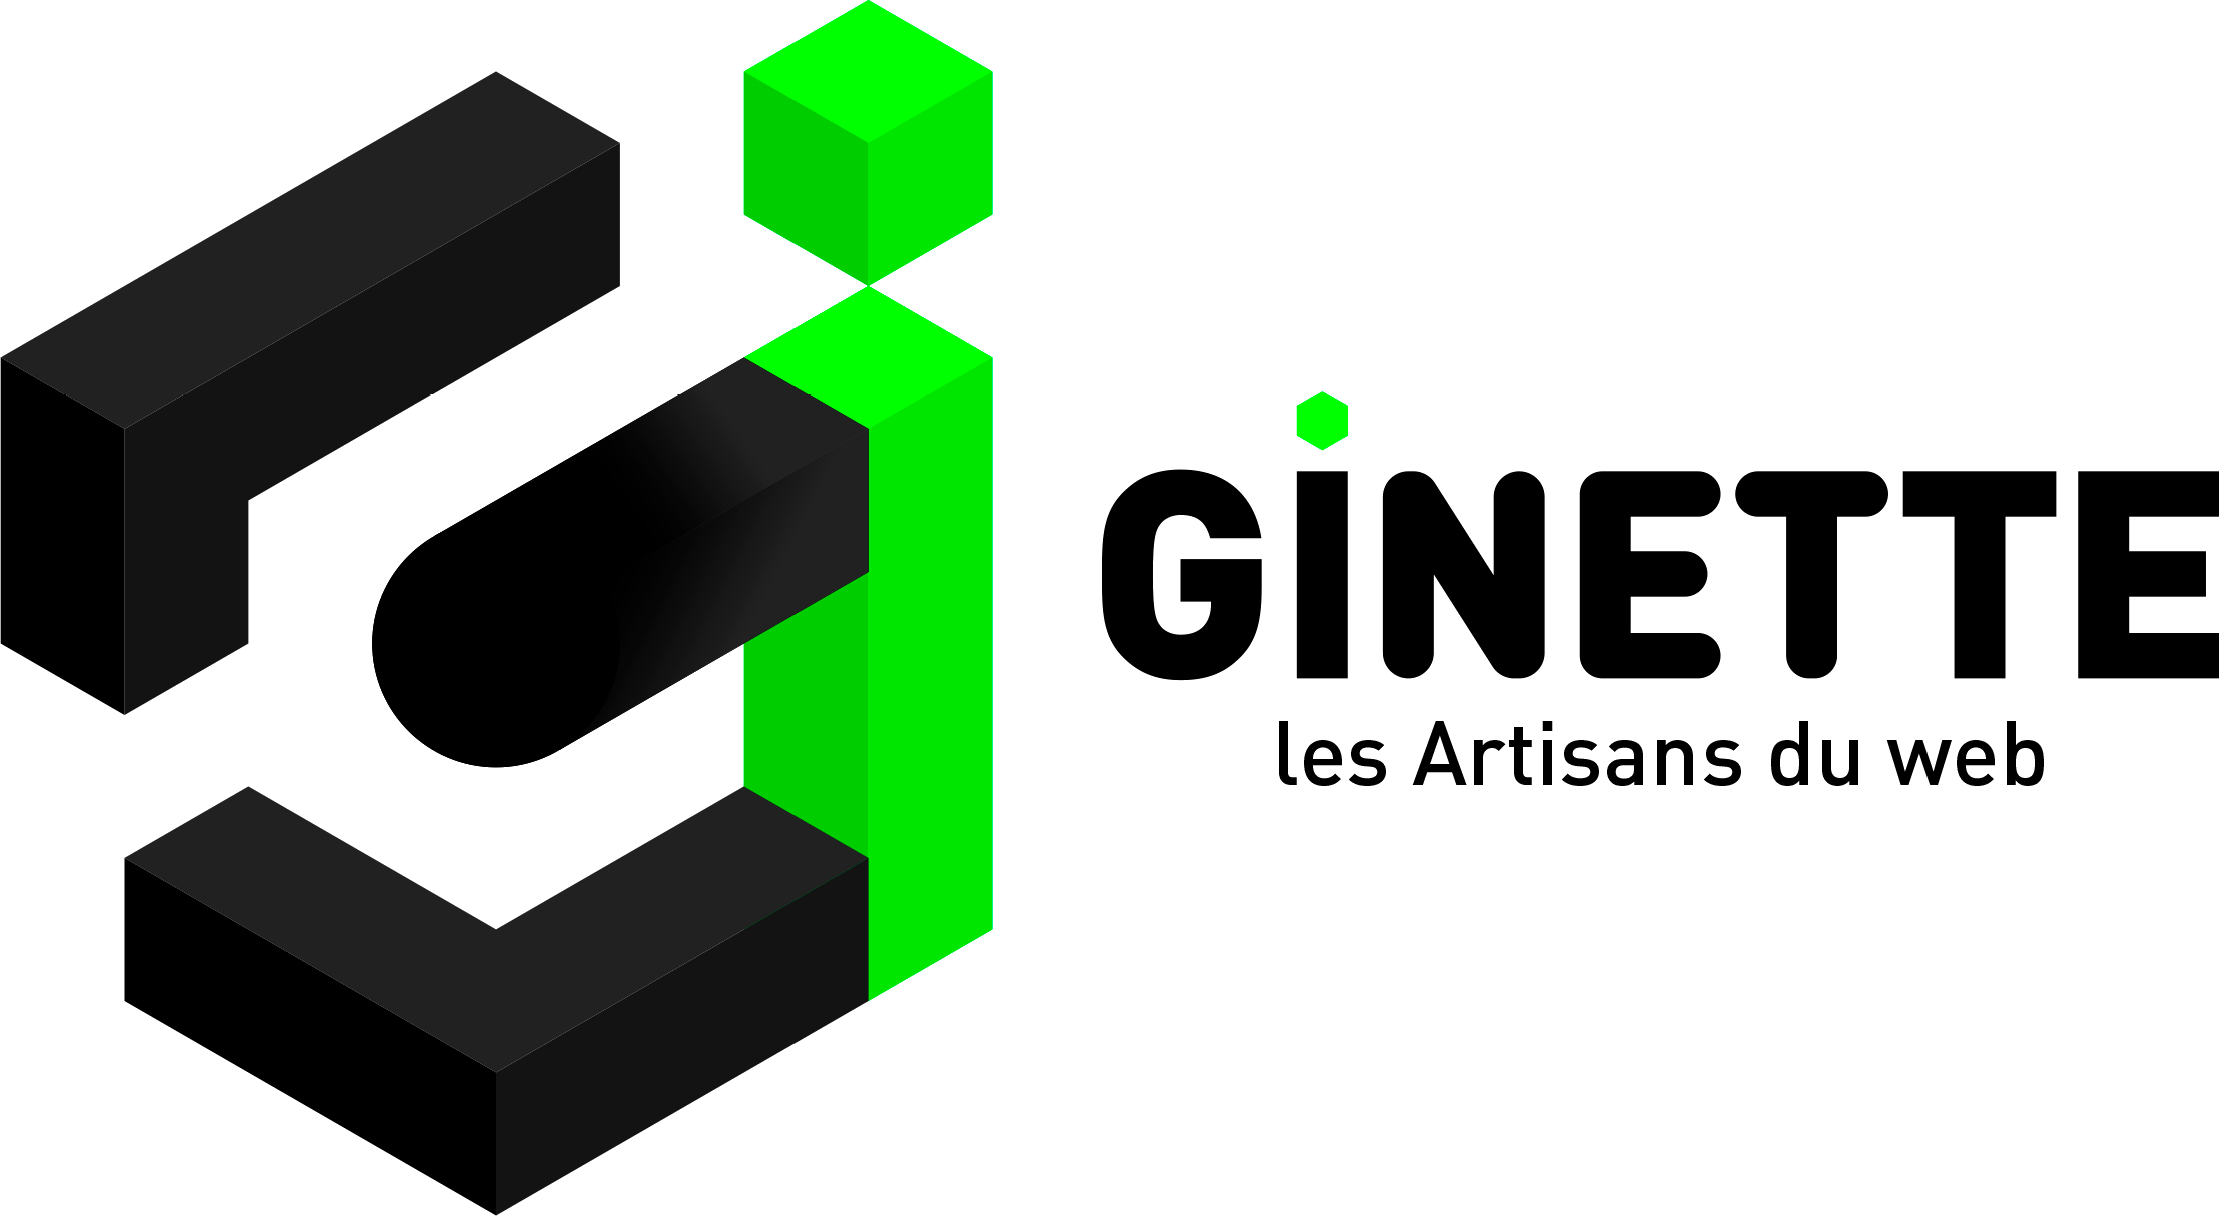 Agence Ginette, les artisans du web